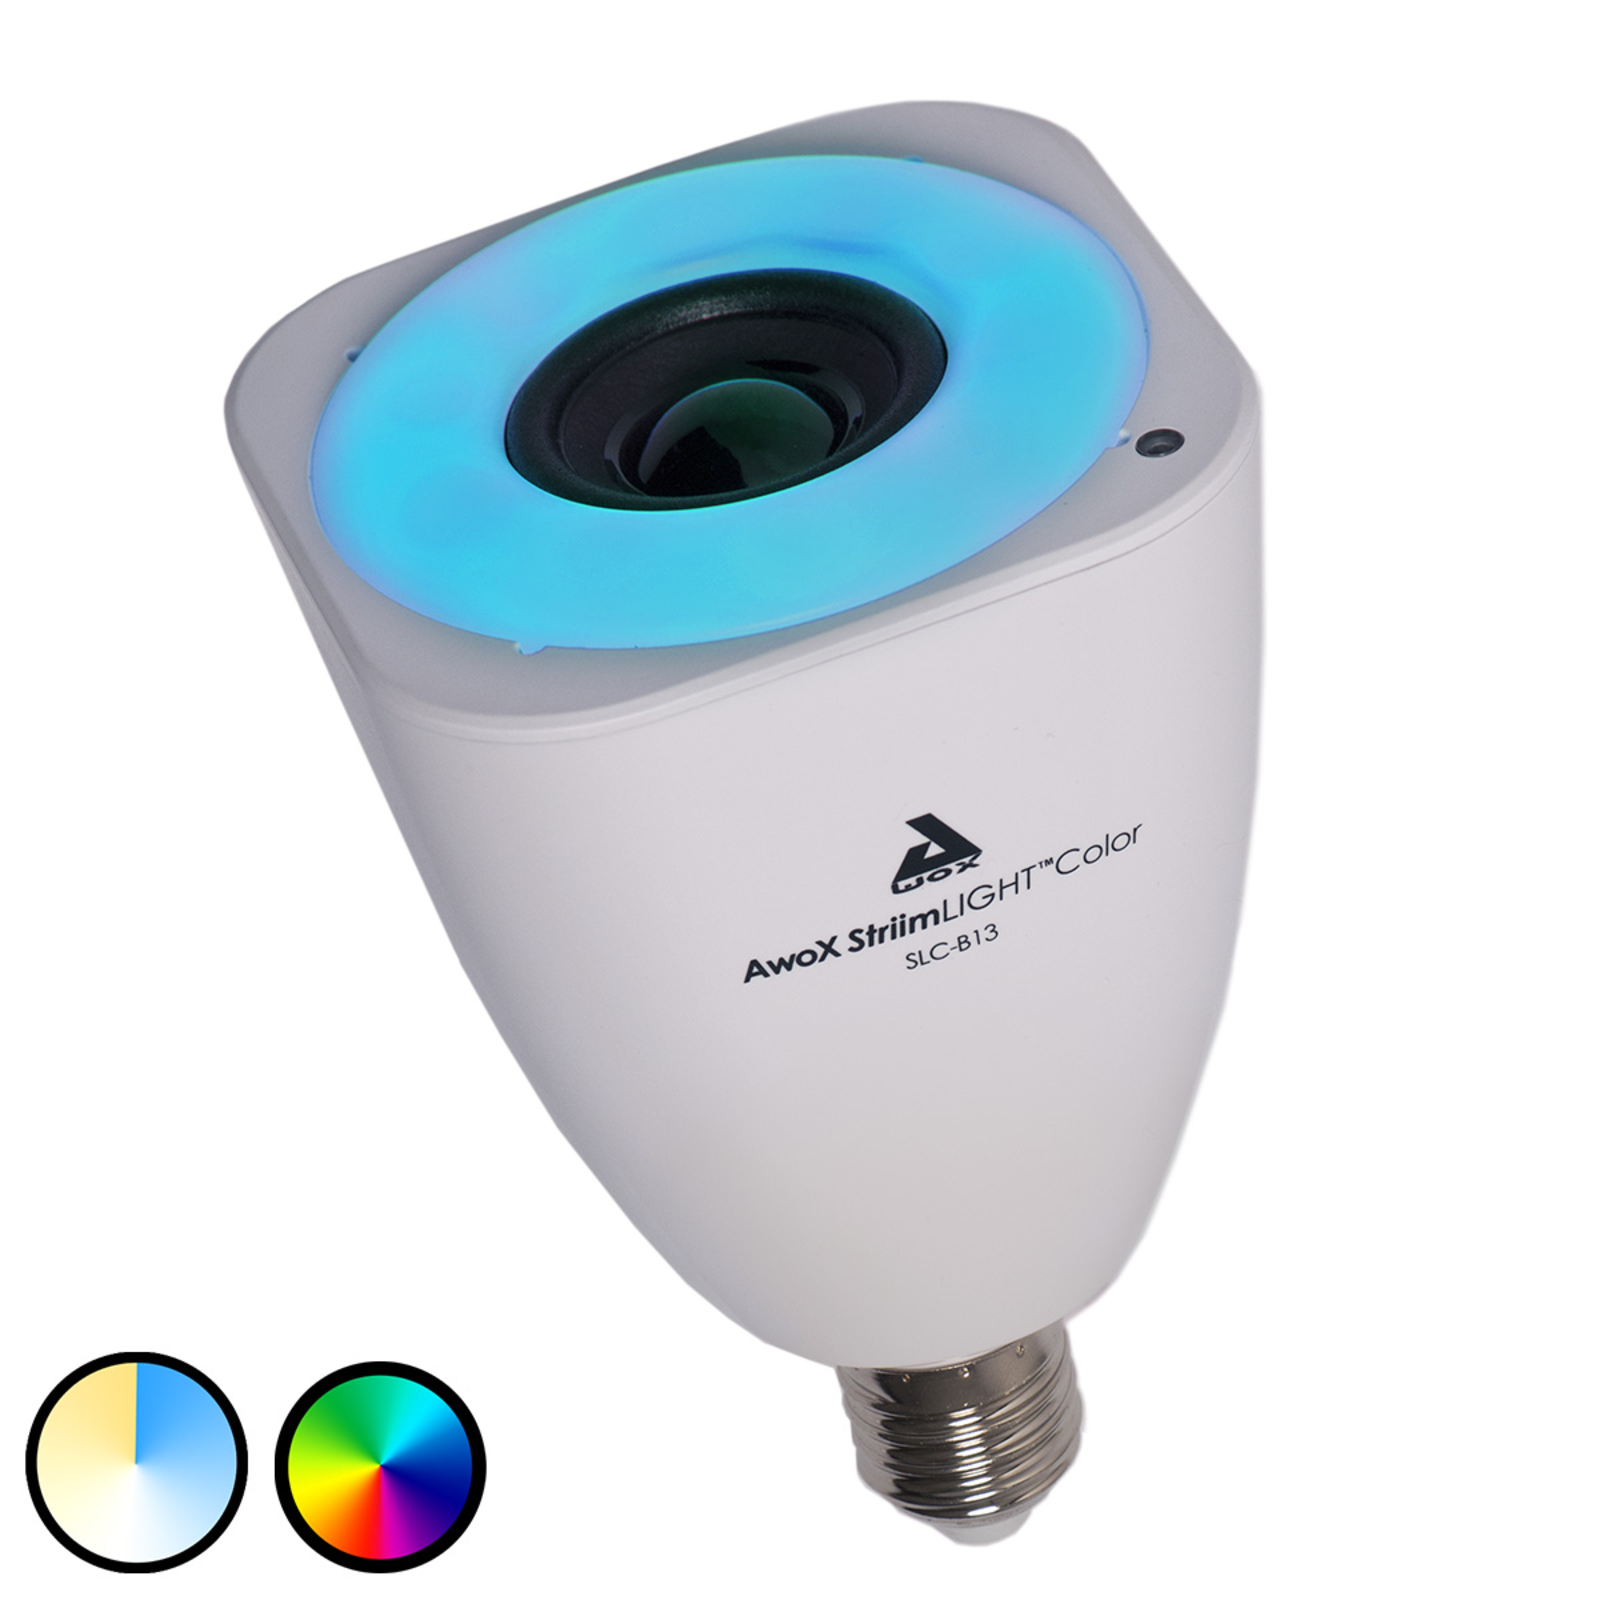 AwoX StriimLIGHT Color LED lampadina E27 Bluetooth